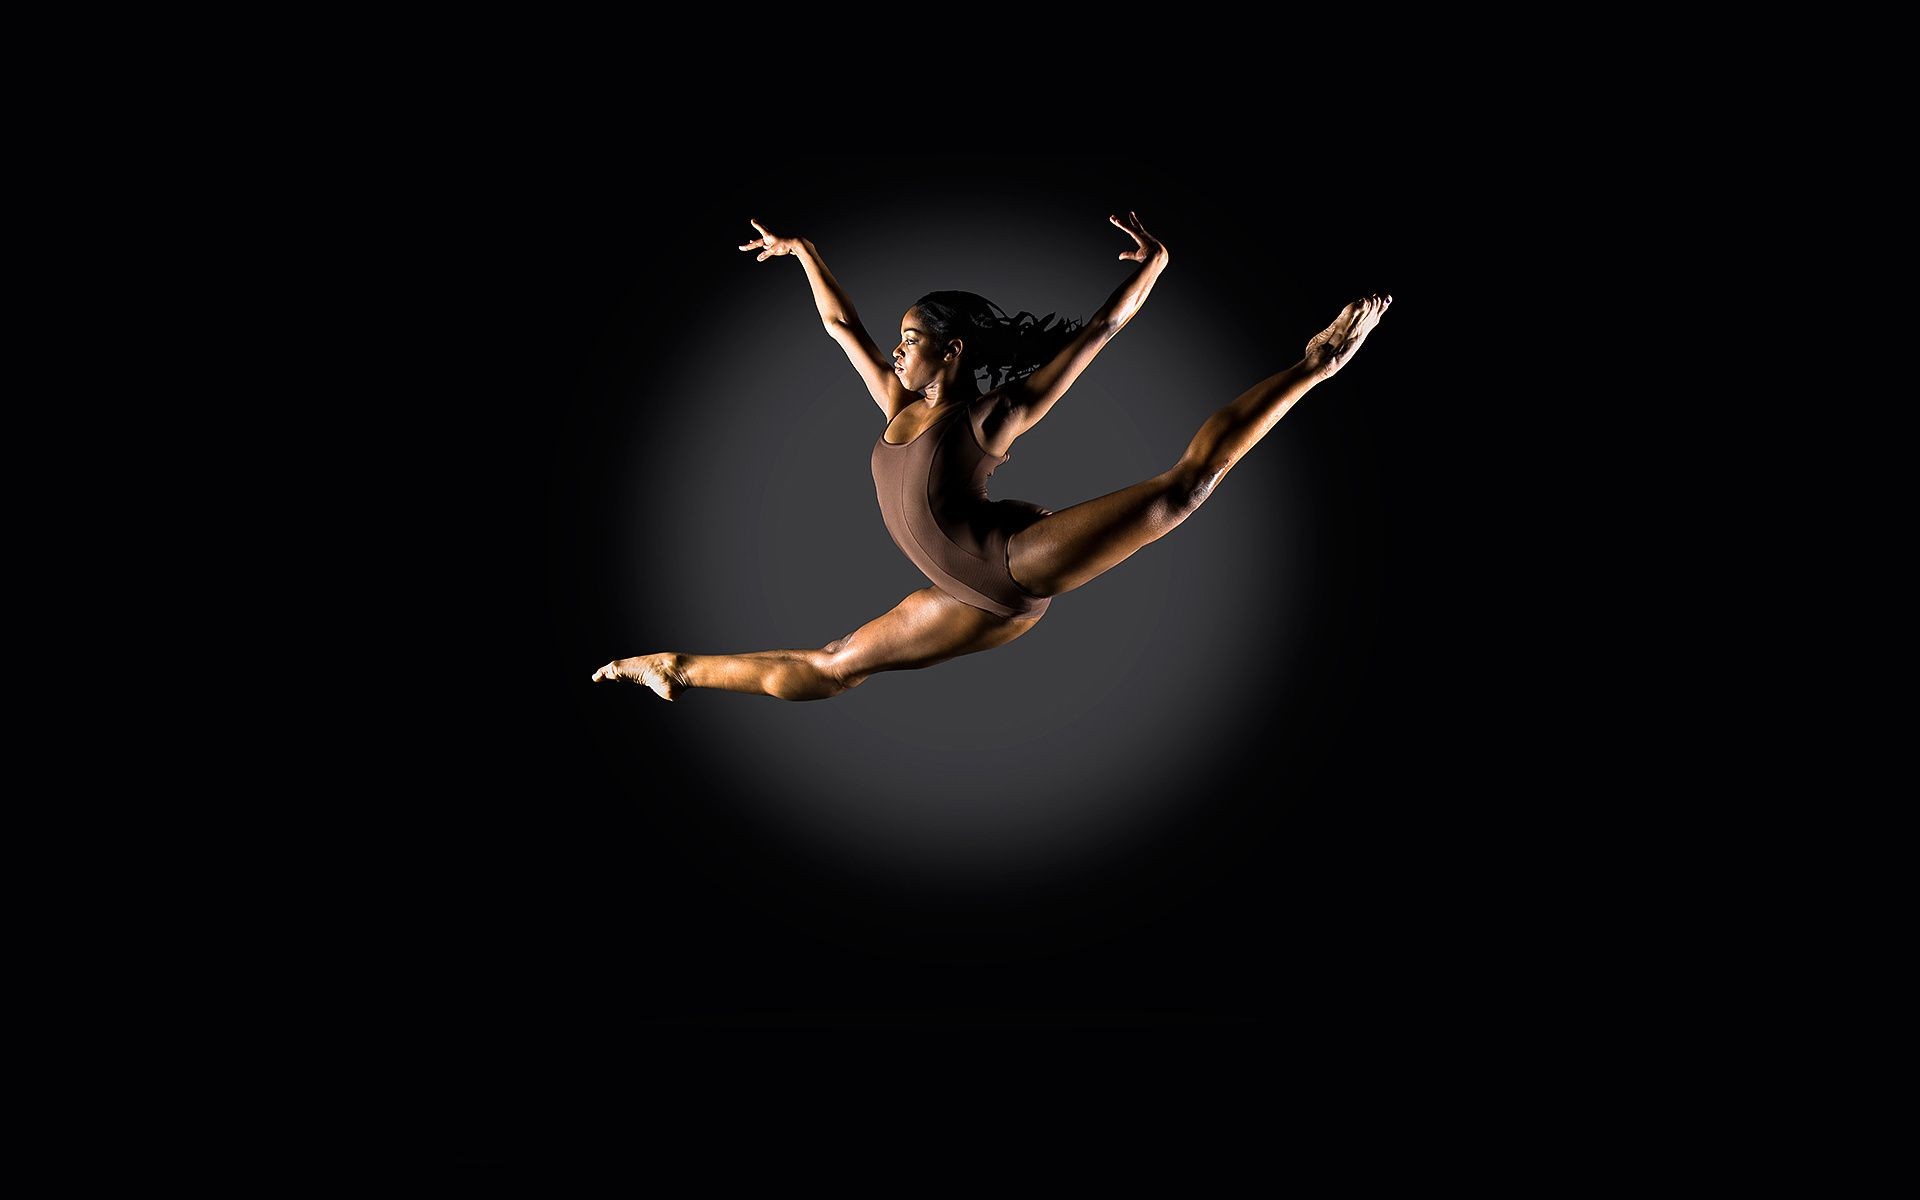 спорт балет ню женщина танцы один действие девушка баланс балерина танцор движения аджилити производительности взрослый умение